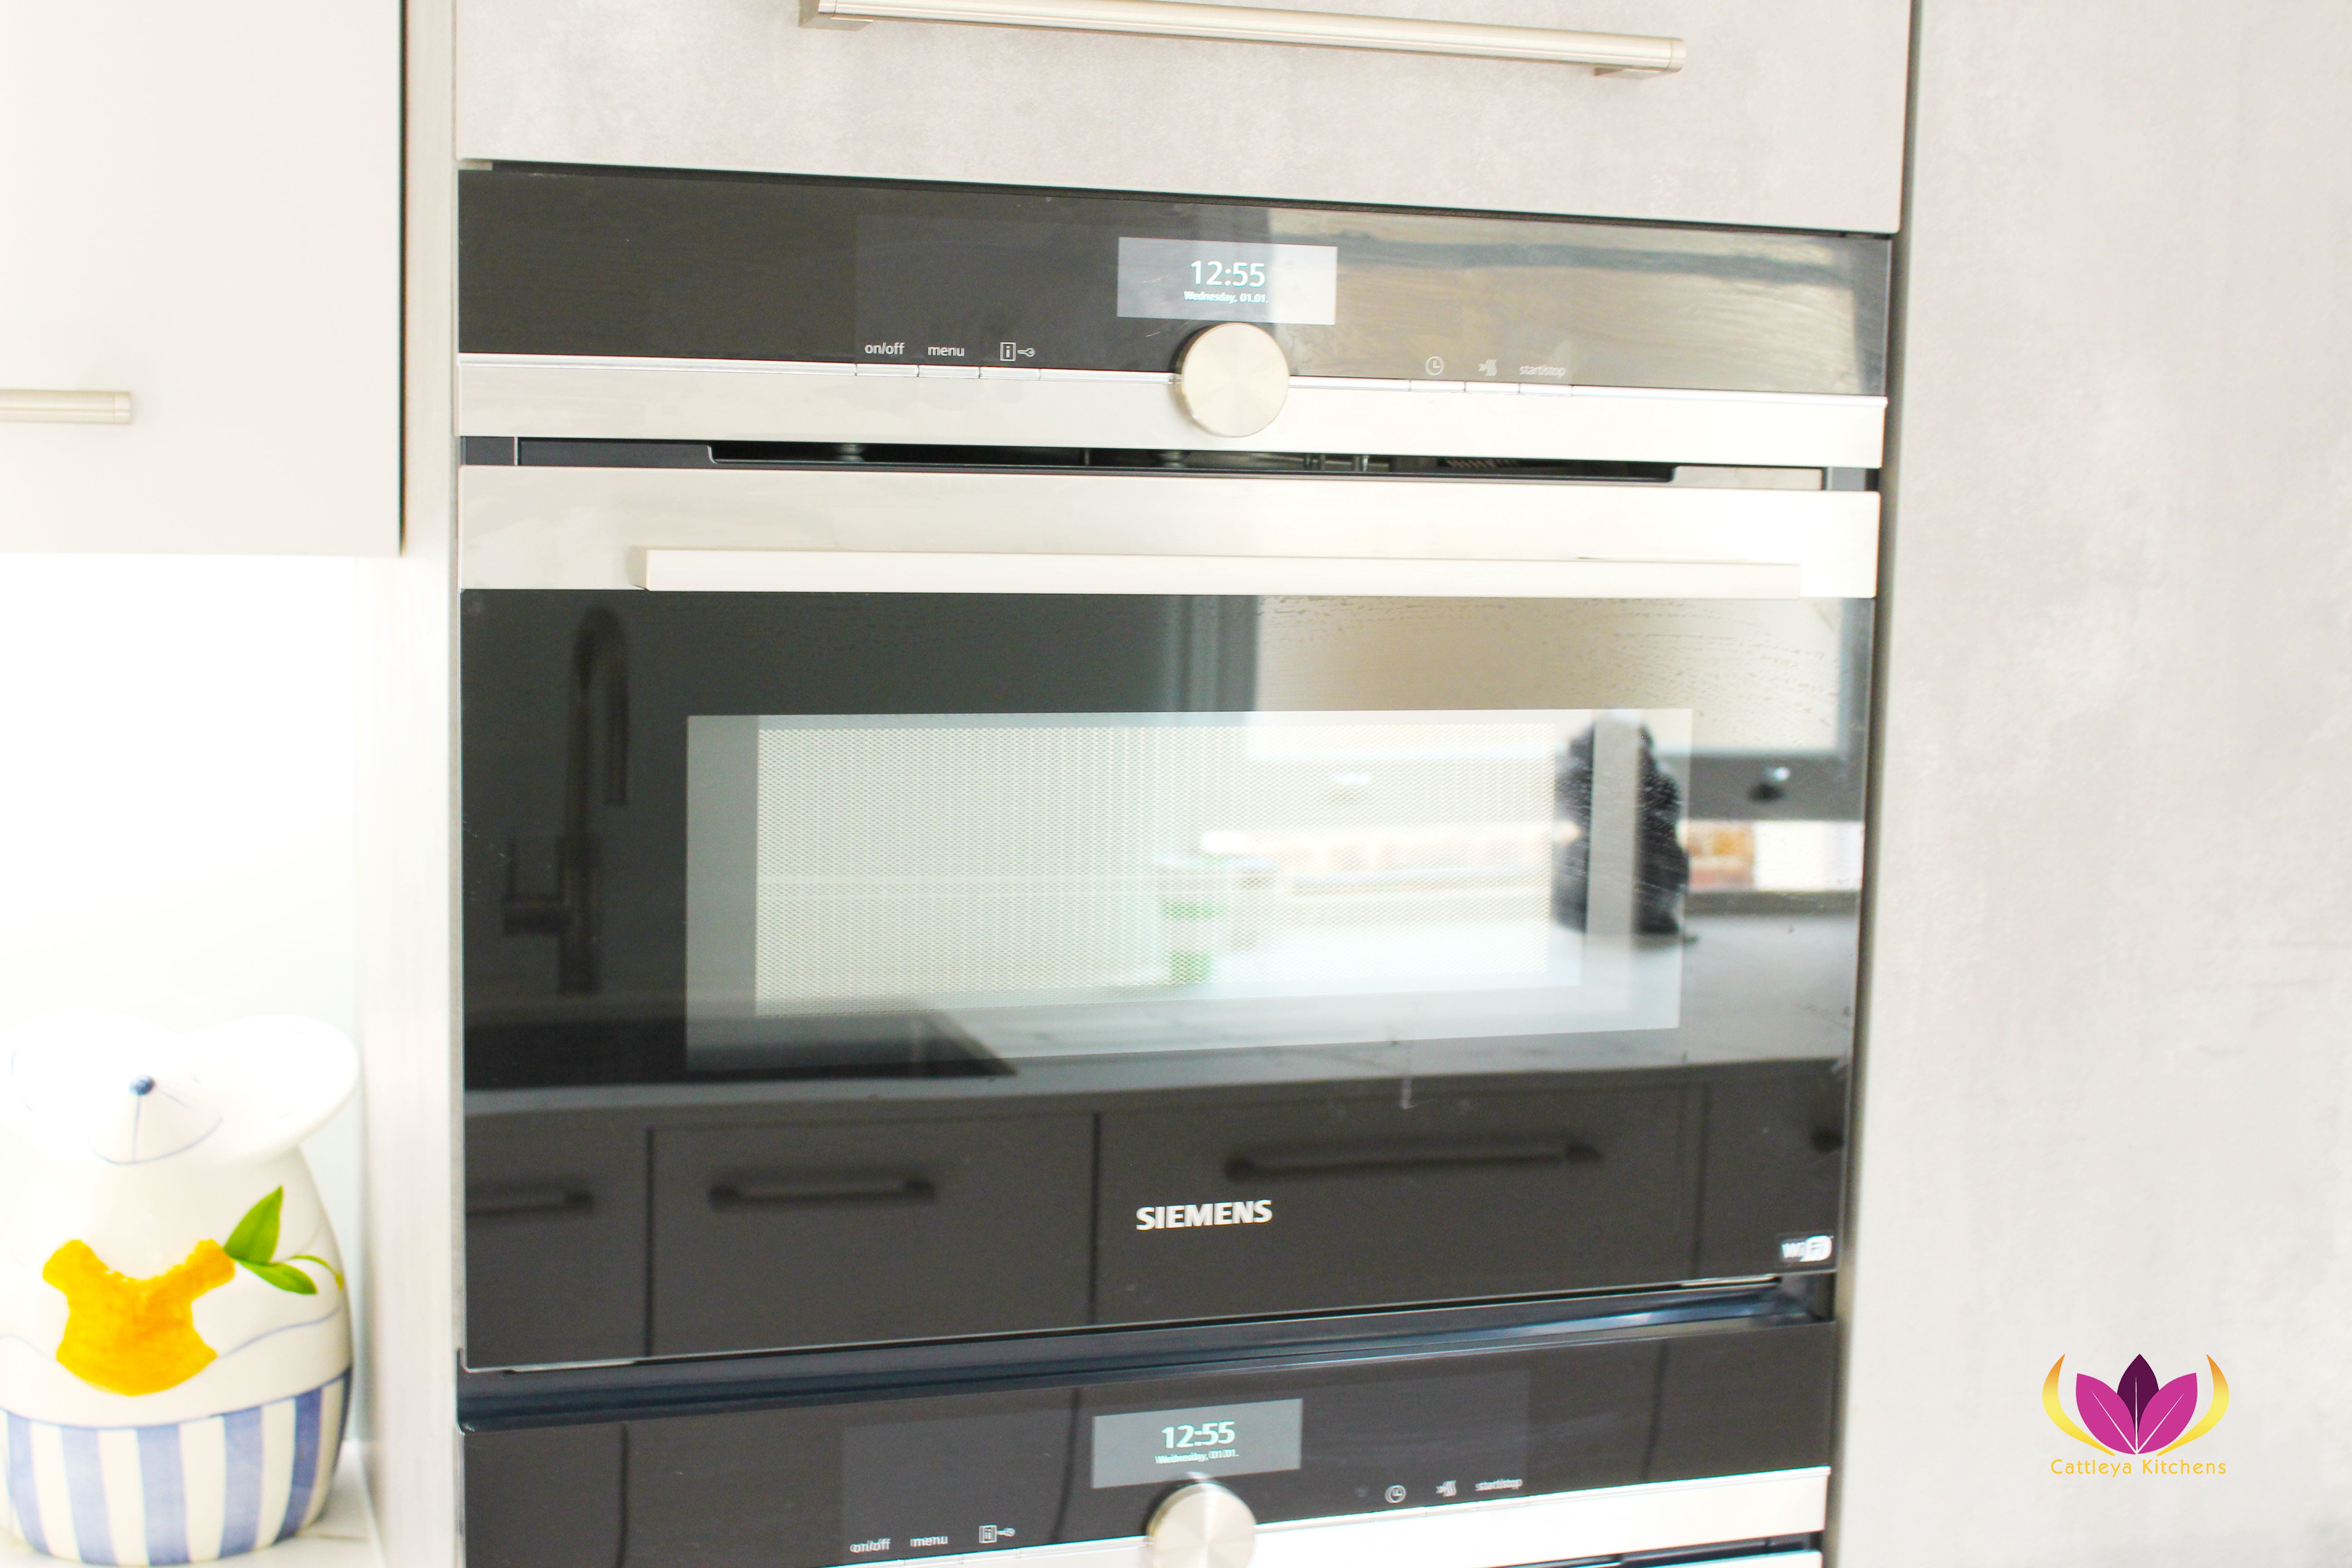 Siemens ovens - Belsize Park Finished Kitchen Project